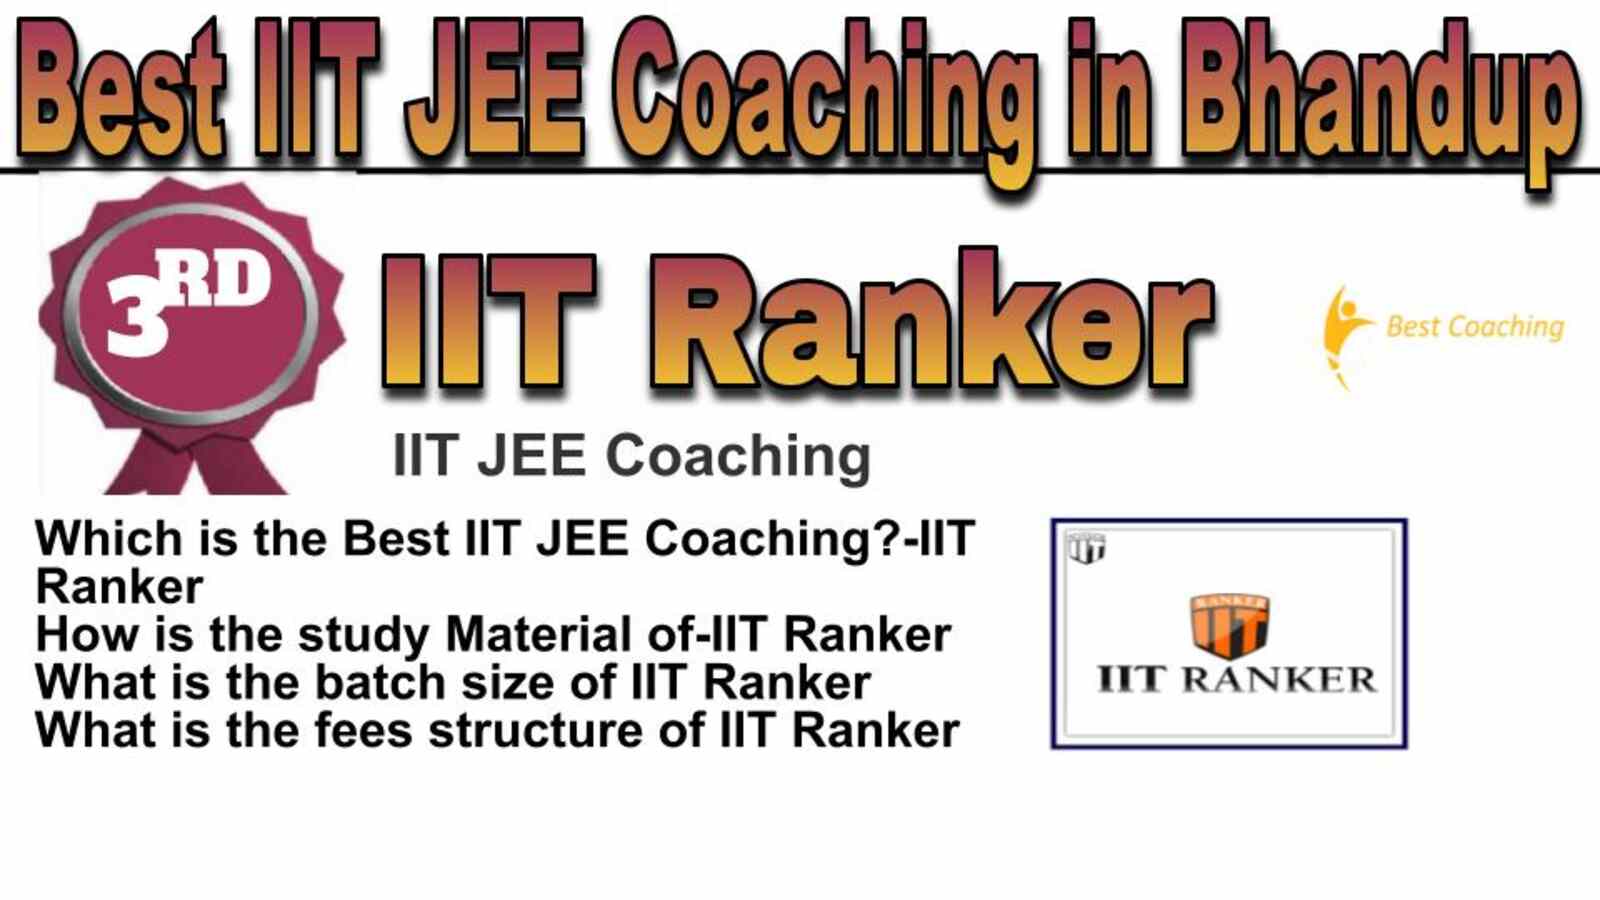 Rank 3 best IIT JEE coaching in Bhandup